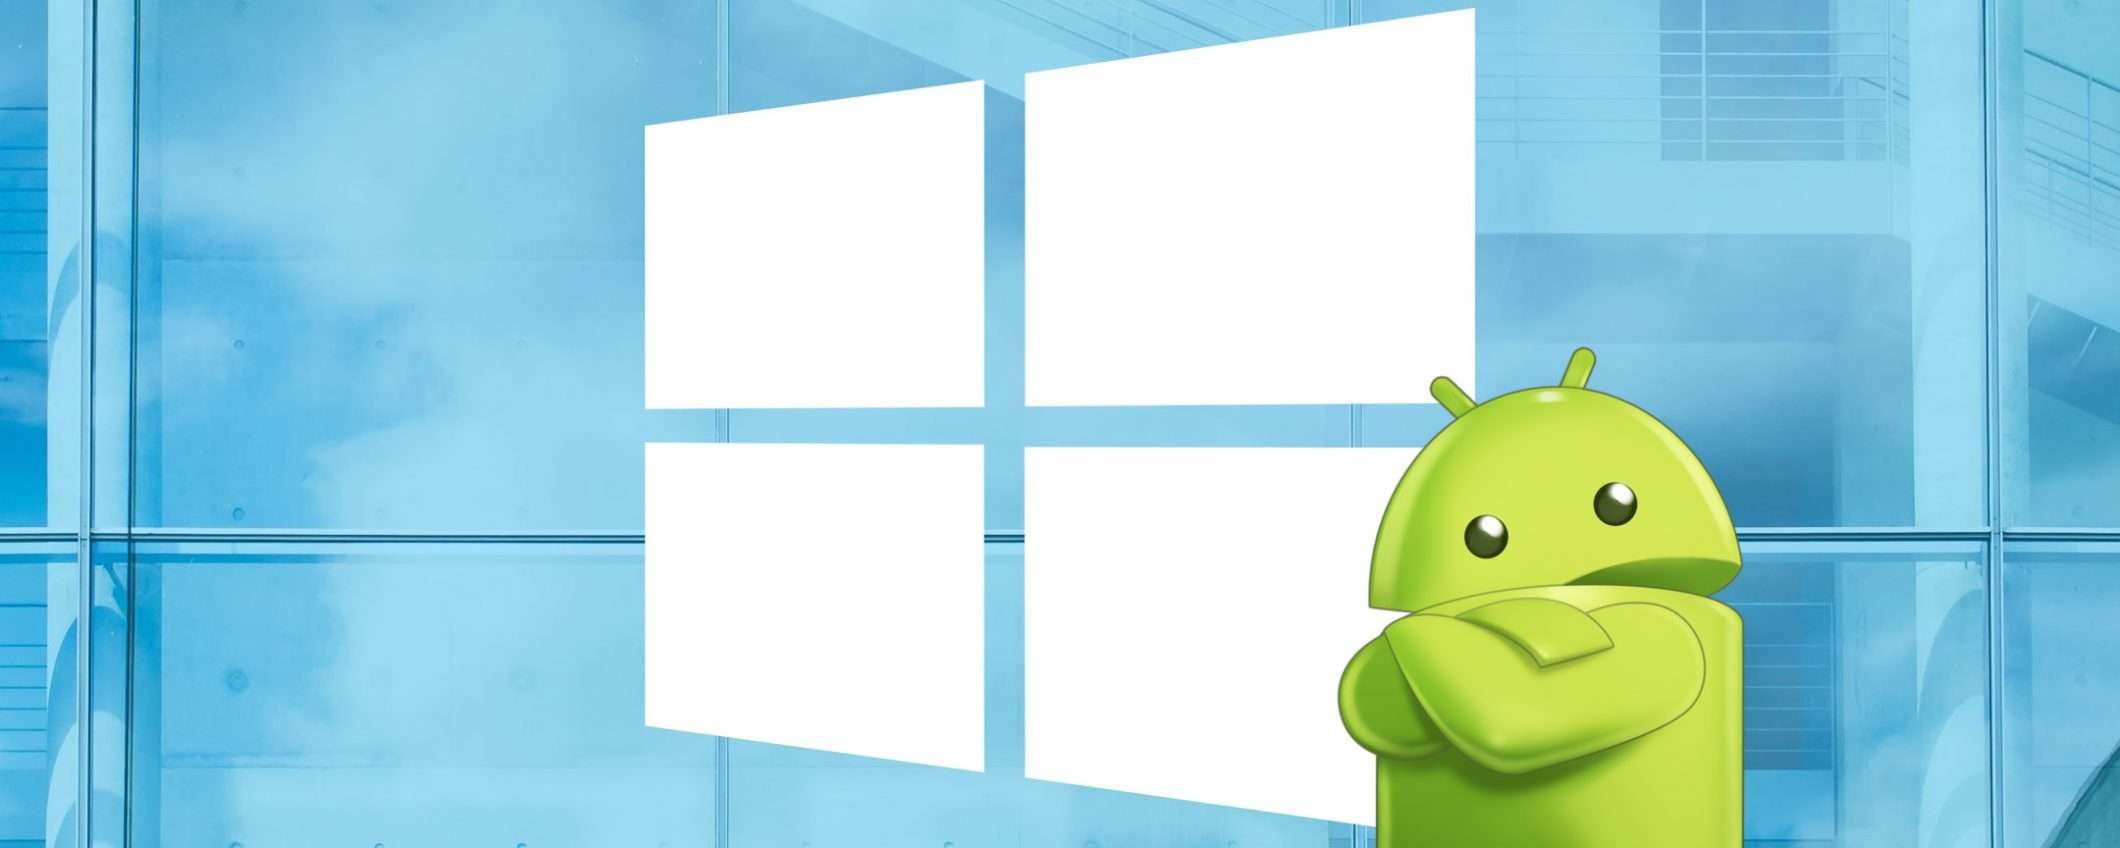 Per Natale regalatevi una licenza Windows 10 per usare le app Android sul PC